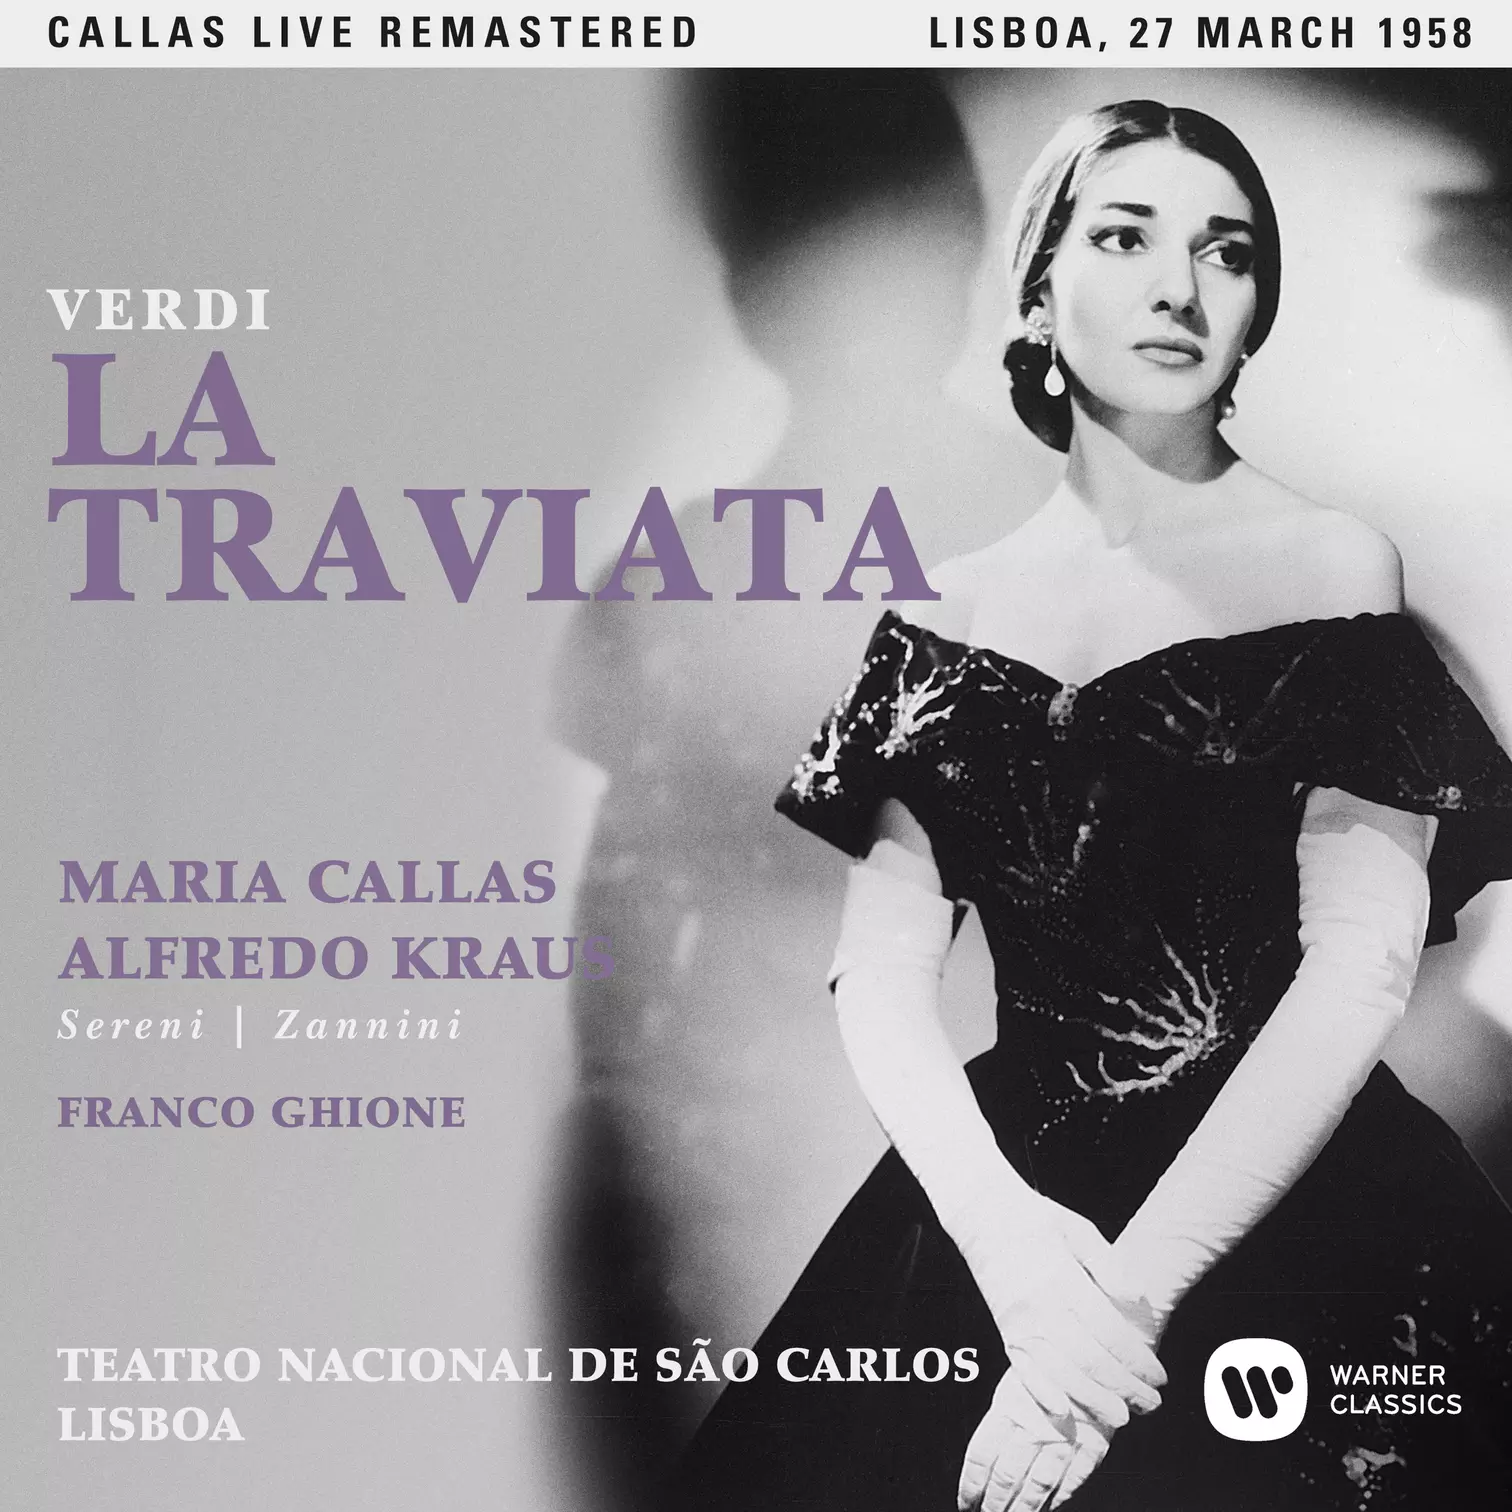 Verdi: La traviata (1958 - Lisbon) - Callas Live Remastered